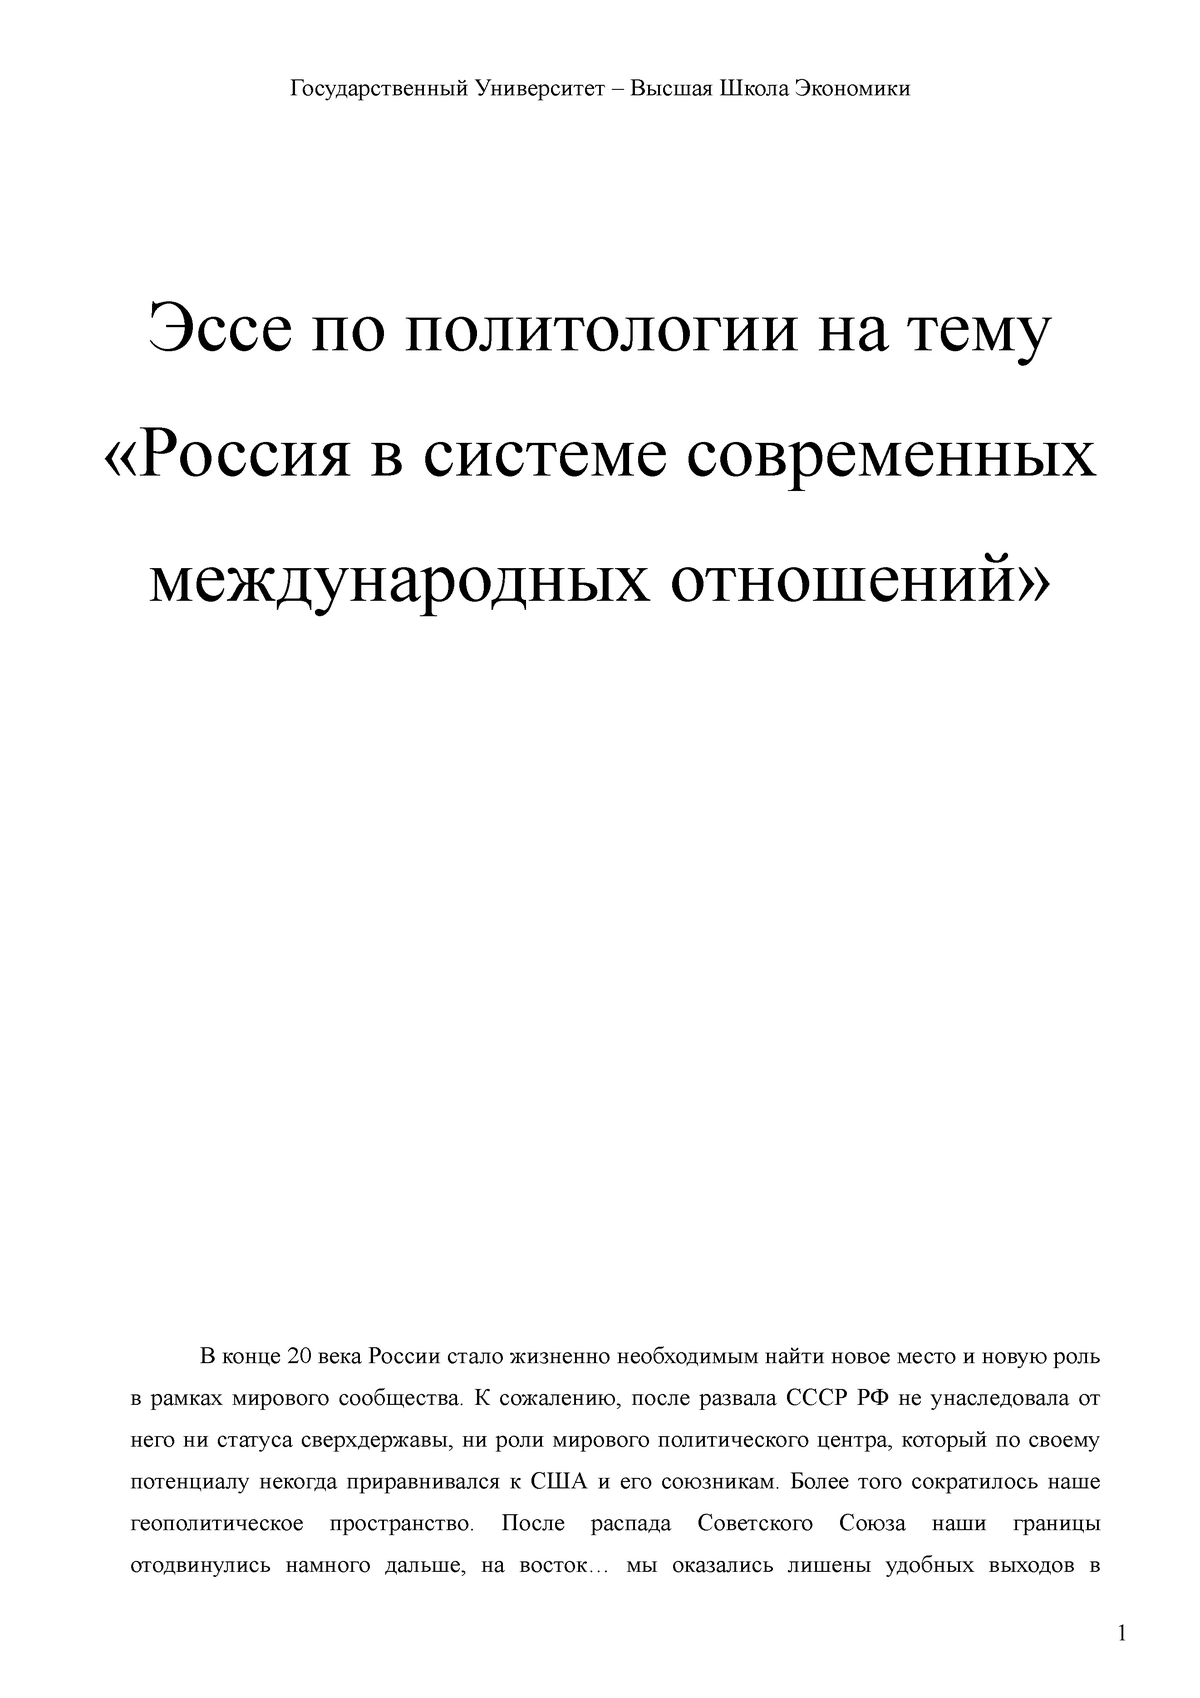  Эссе по теме Единое экономическое пространство ЕврАзЭС и развитие российского финансового права